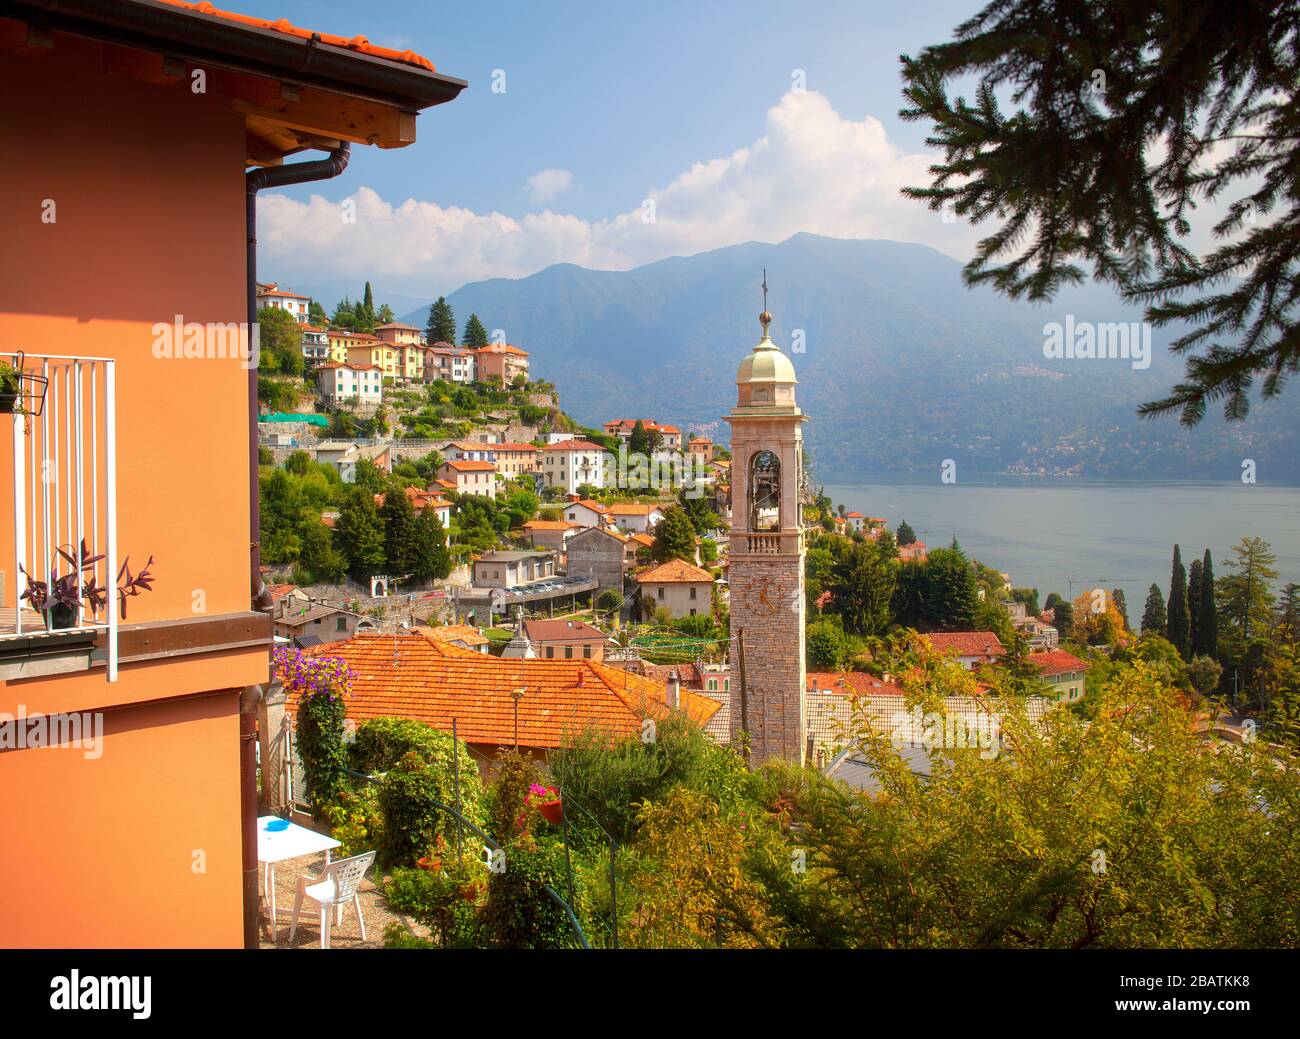 Tagestenszene am berühmten Comer See in Italien Stockfoto